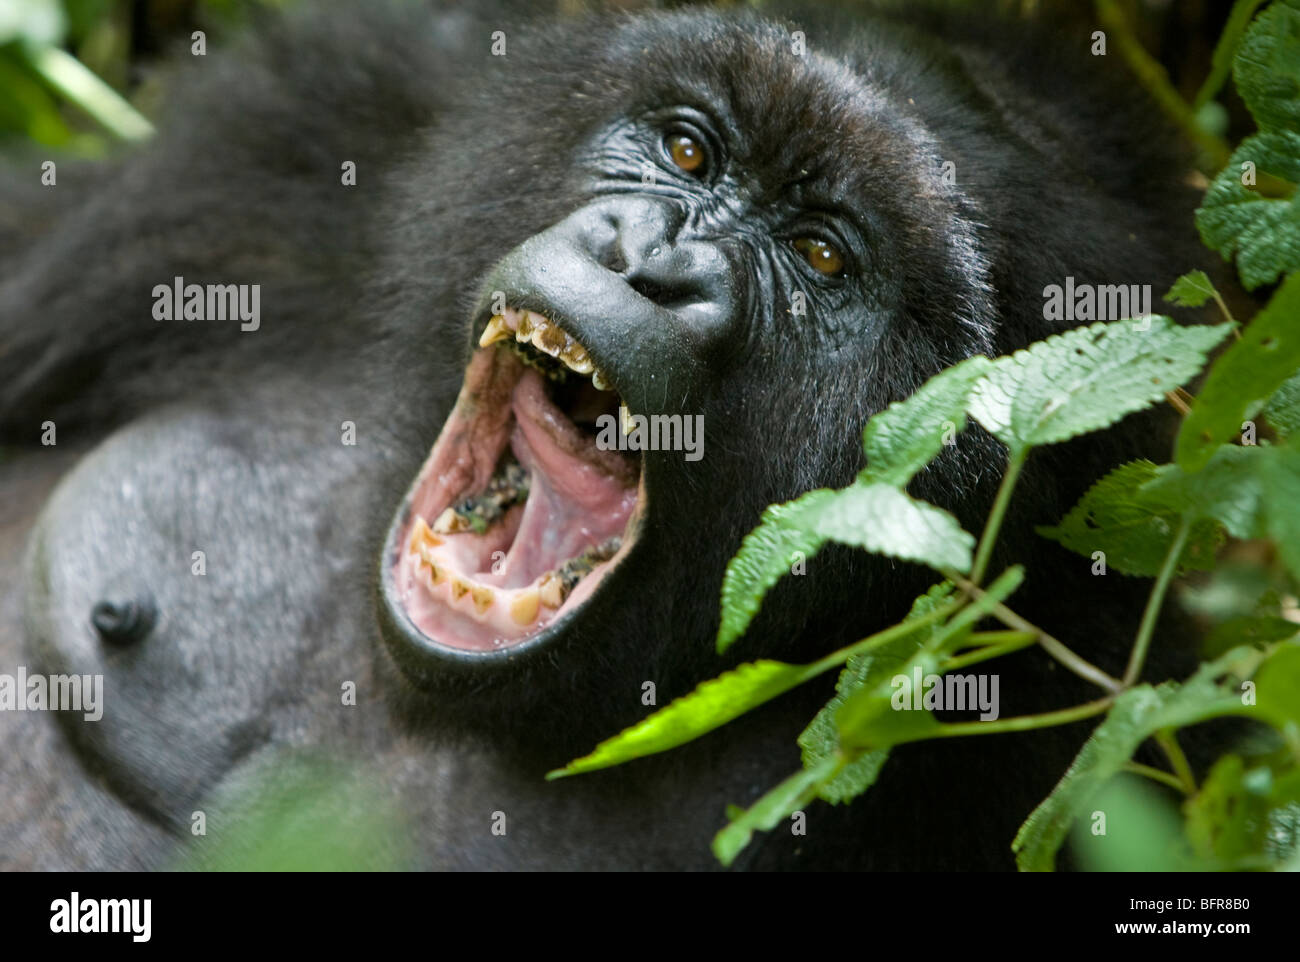 Gorila de montaña con la boca abierta mostrando los dientes Foto de stock